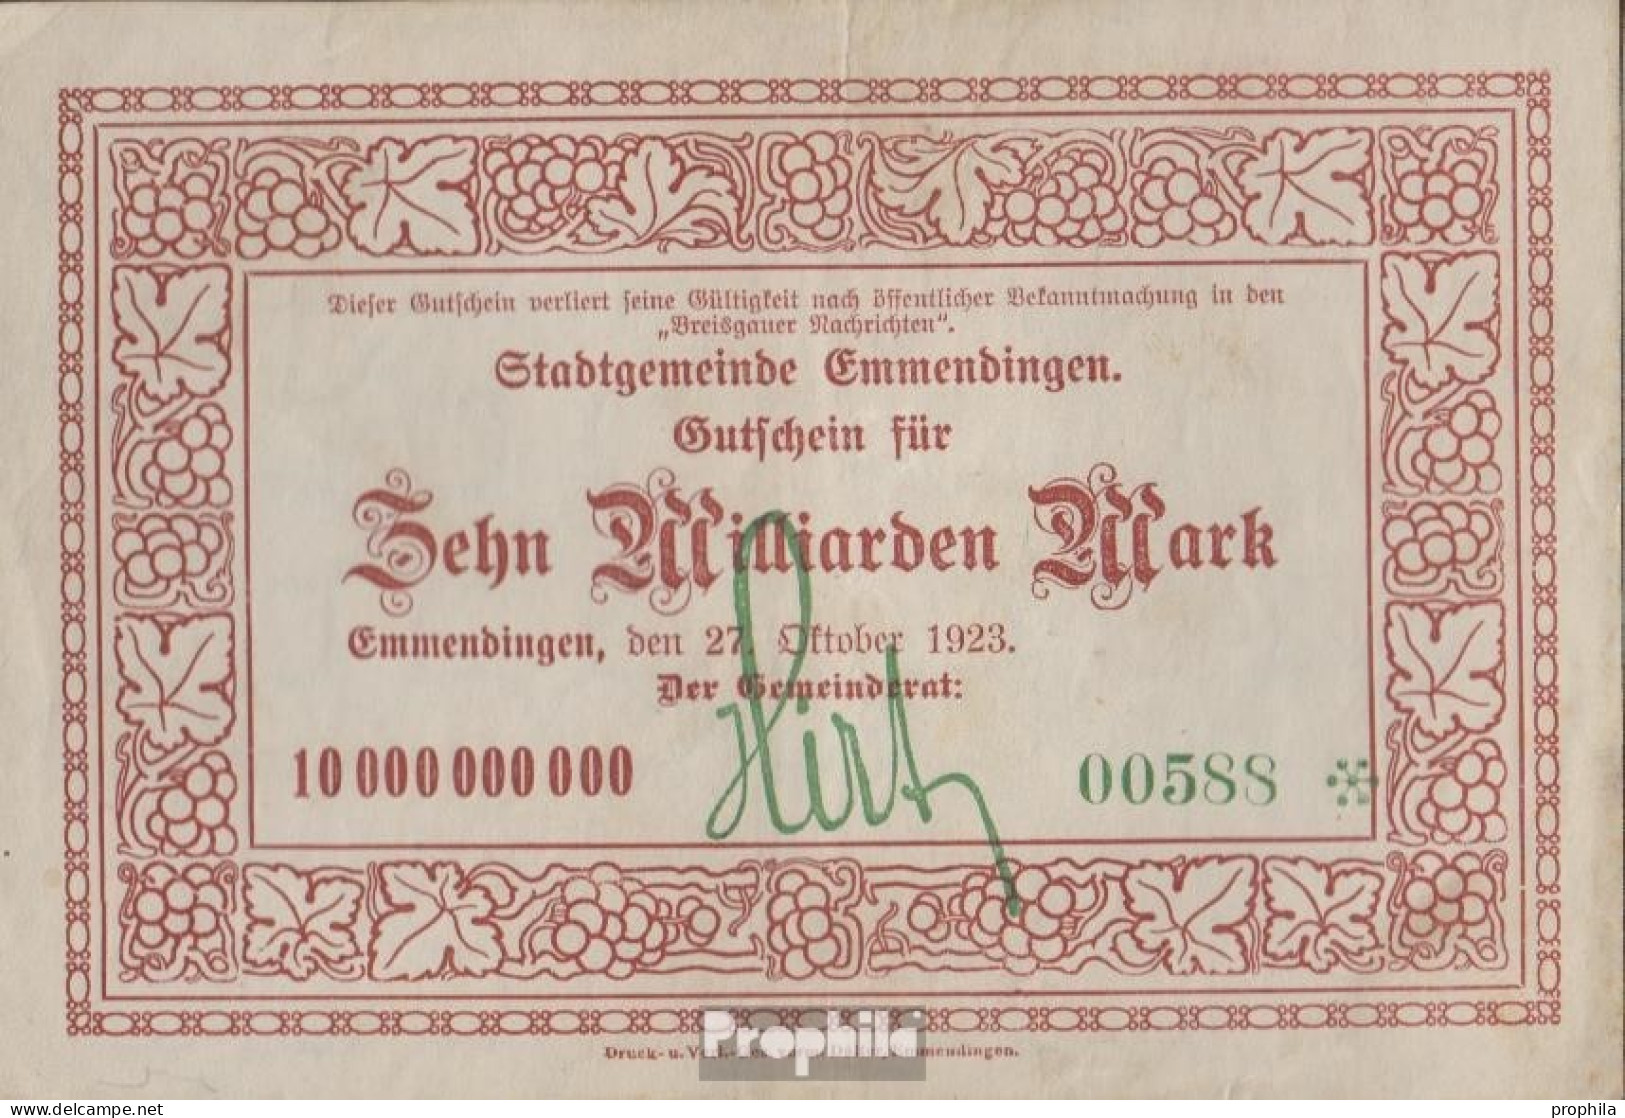 Emmendingen Inflationsgeld Stadt Emmendingen Gebraucht (III) 1923 10 Milliarden Mark - 10 Milliarden Mark